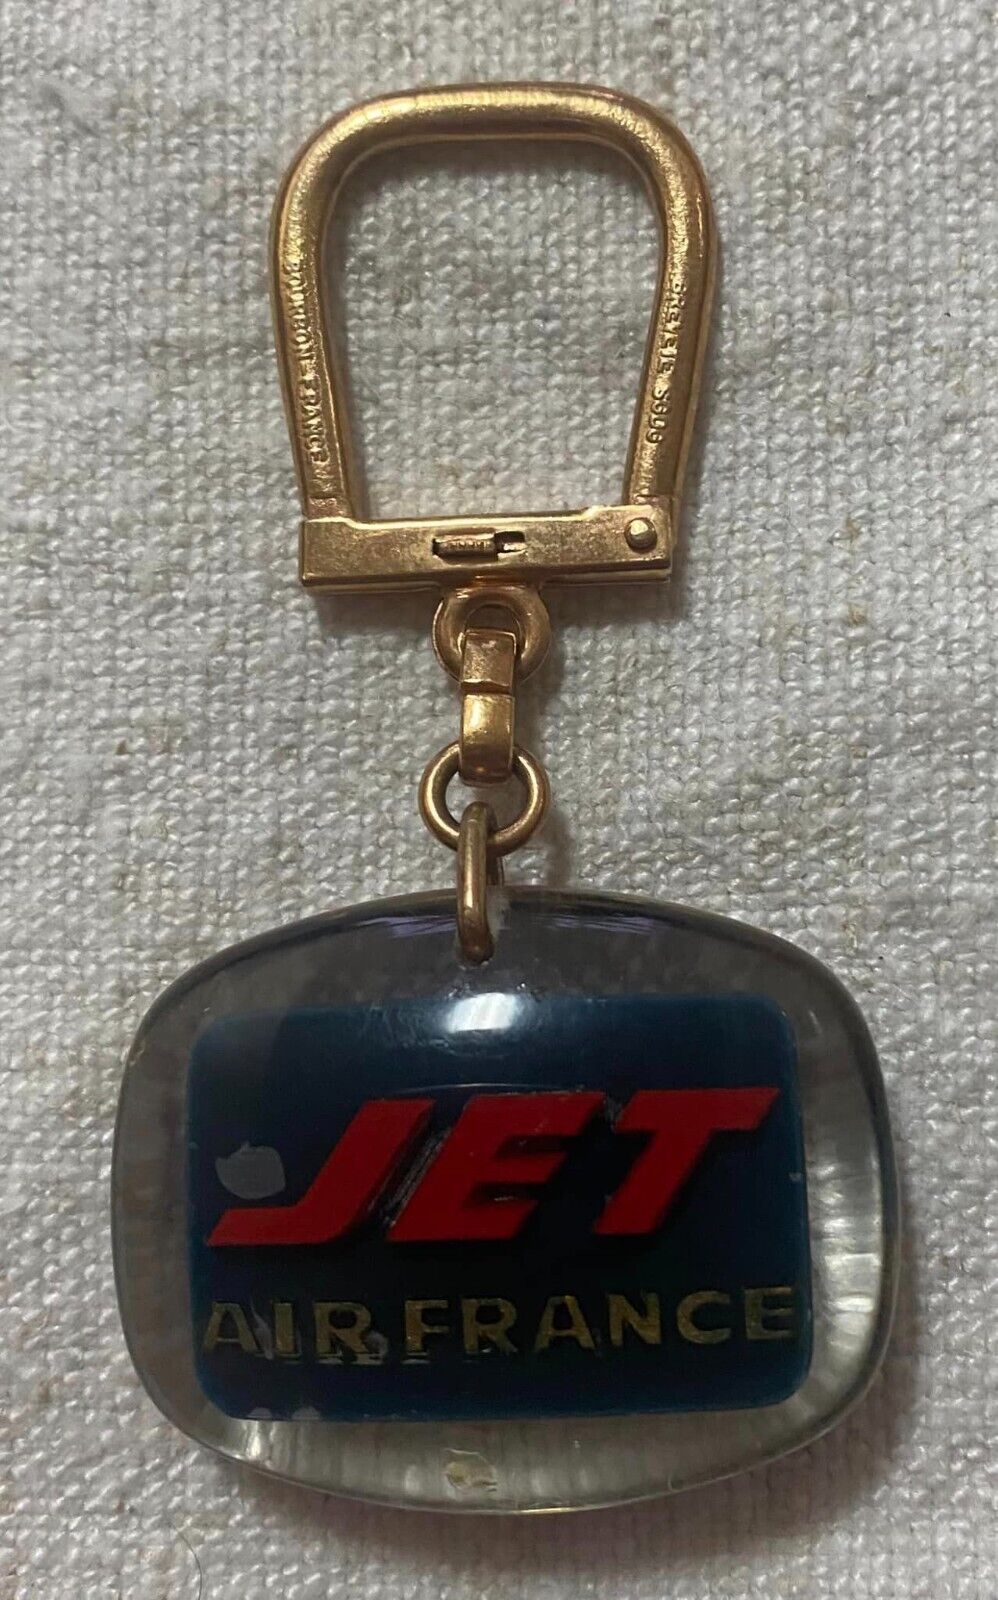 bourbon france key ring air france jet boing Jet caravelle logo keychain